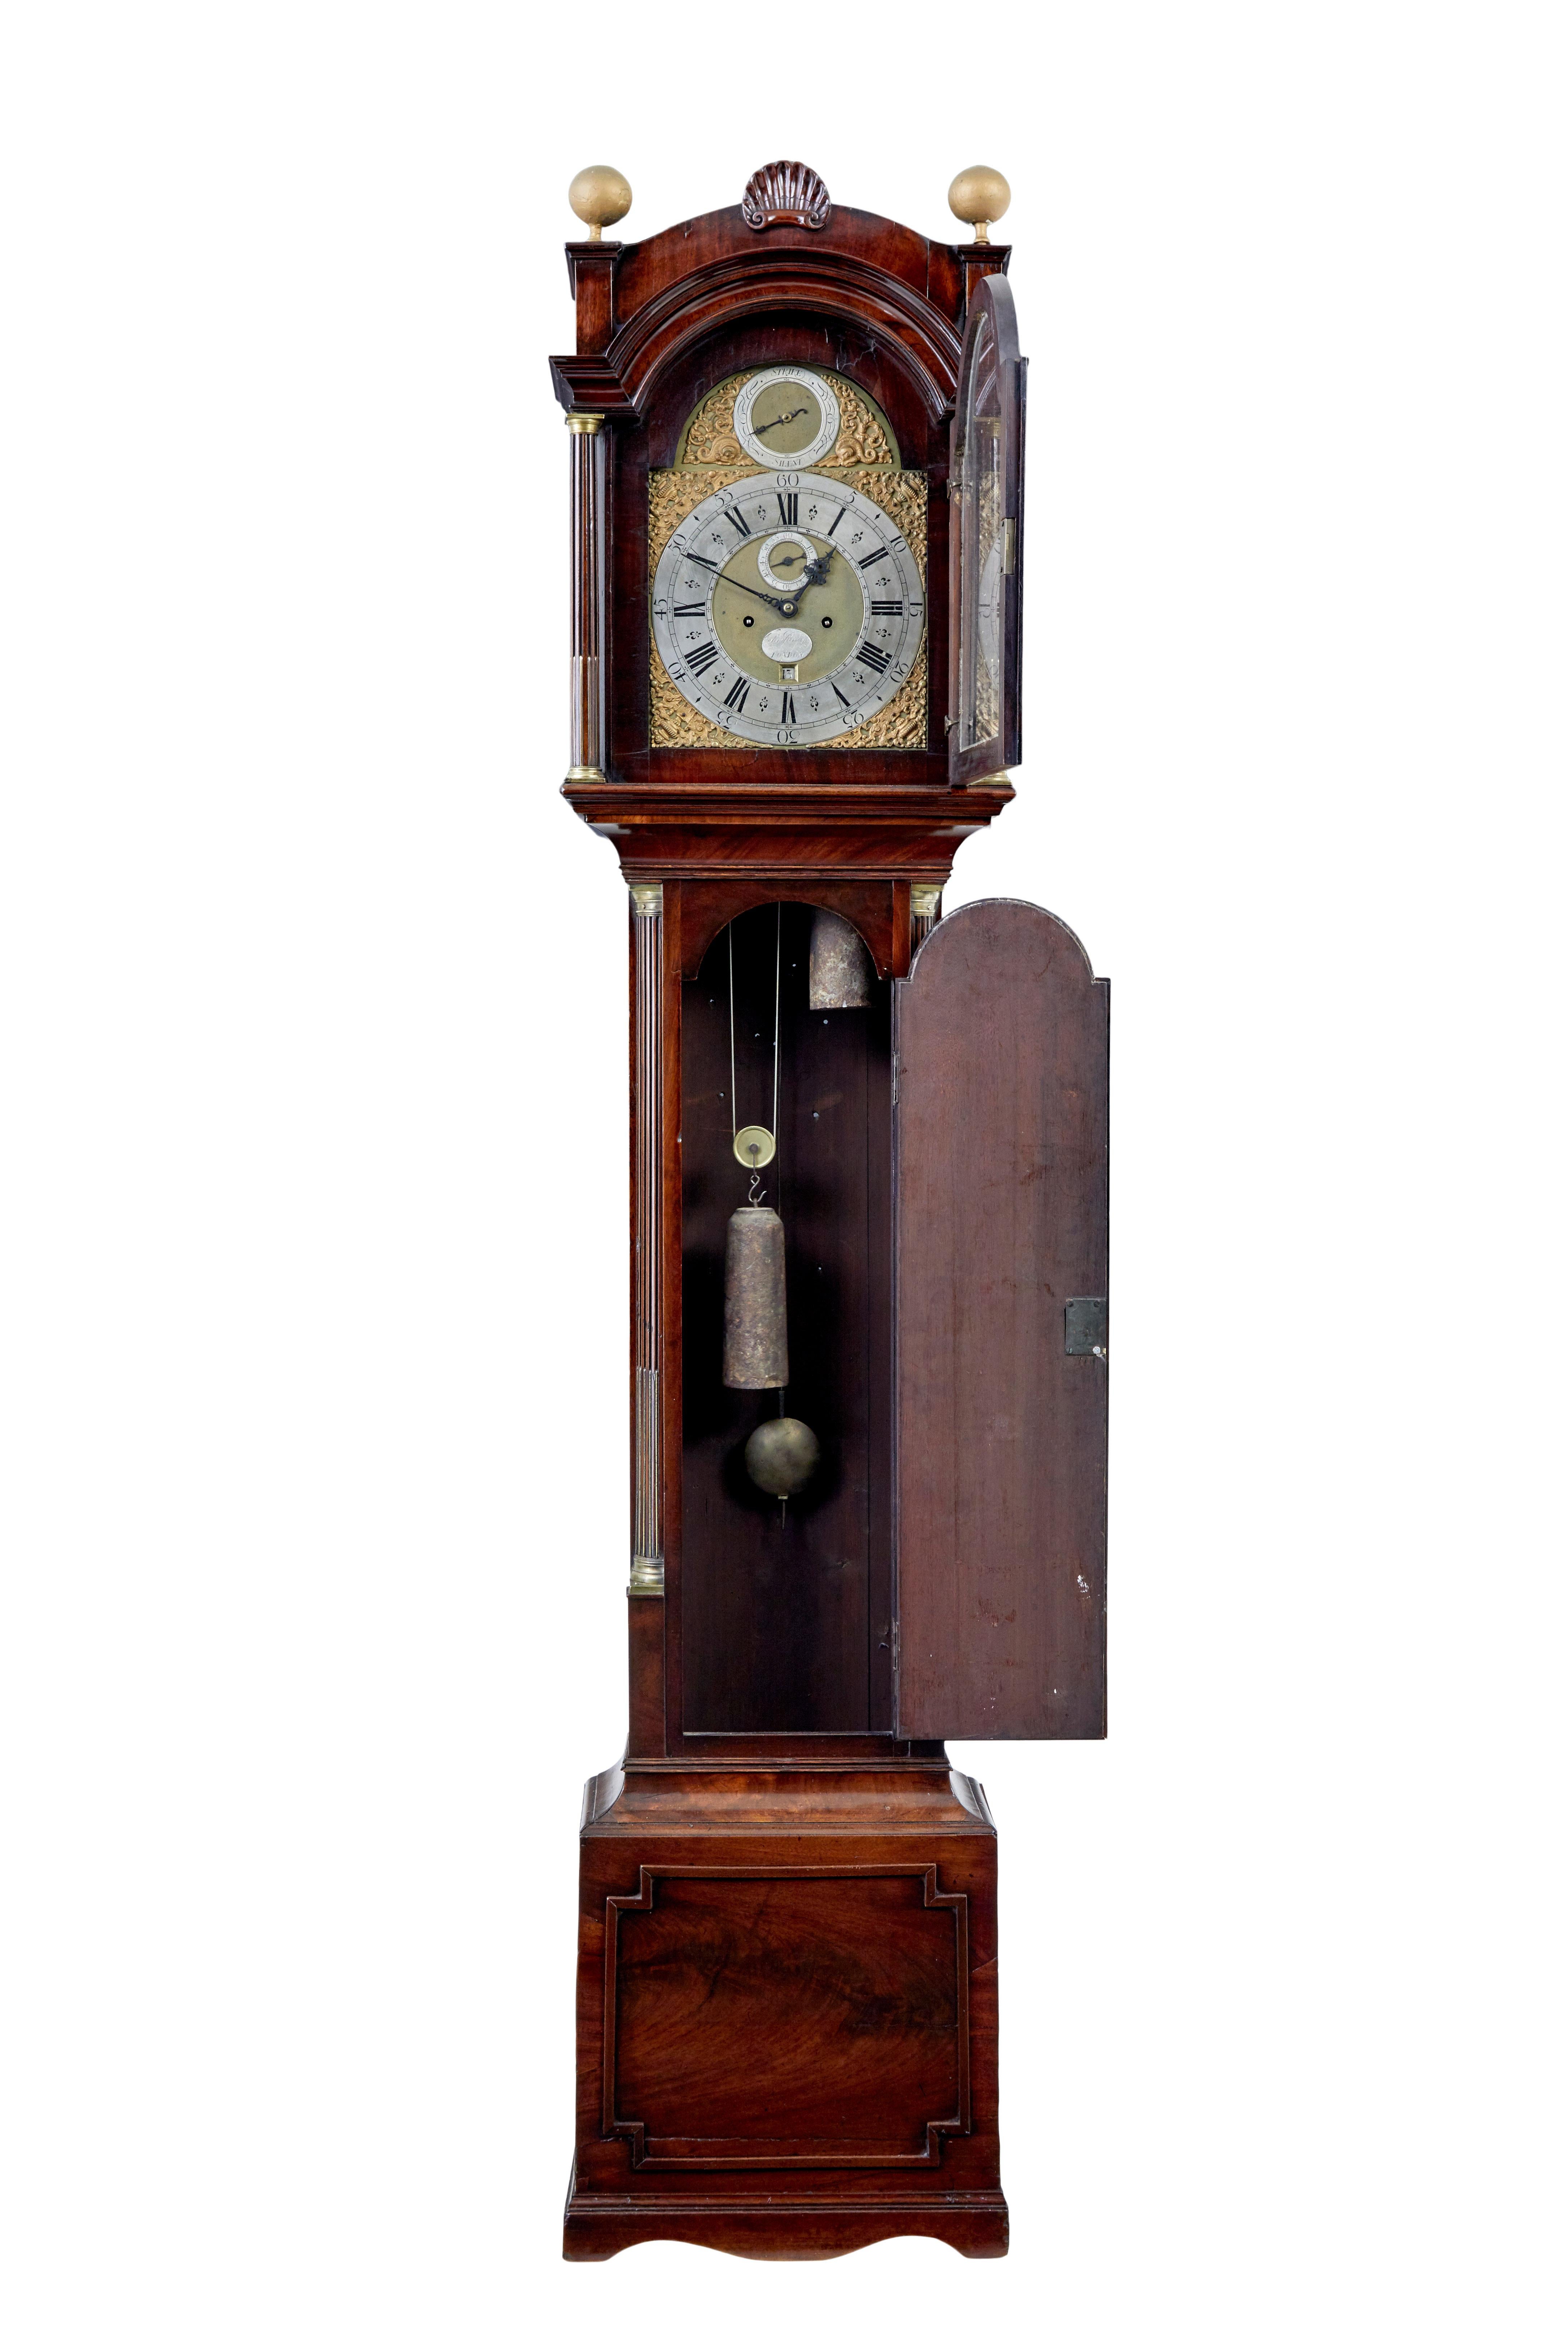 Mahagoni Standuhr aus dem späten 18. Jahrhundert John Purden London um 1790.

Georgianische Standuhr aus Mahagoni um 1790. Uhrwerk hergestellt und signiert von dem bekannten Uhrmacher John Purden aus London. Uhrwerk mit römischen und arabischen